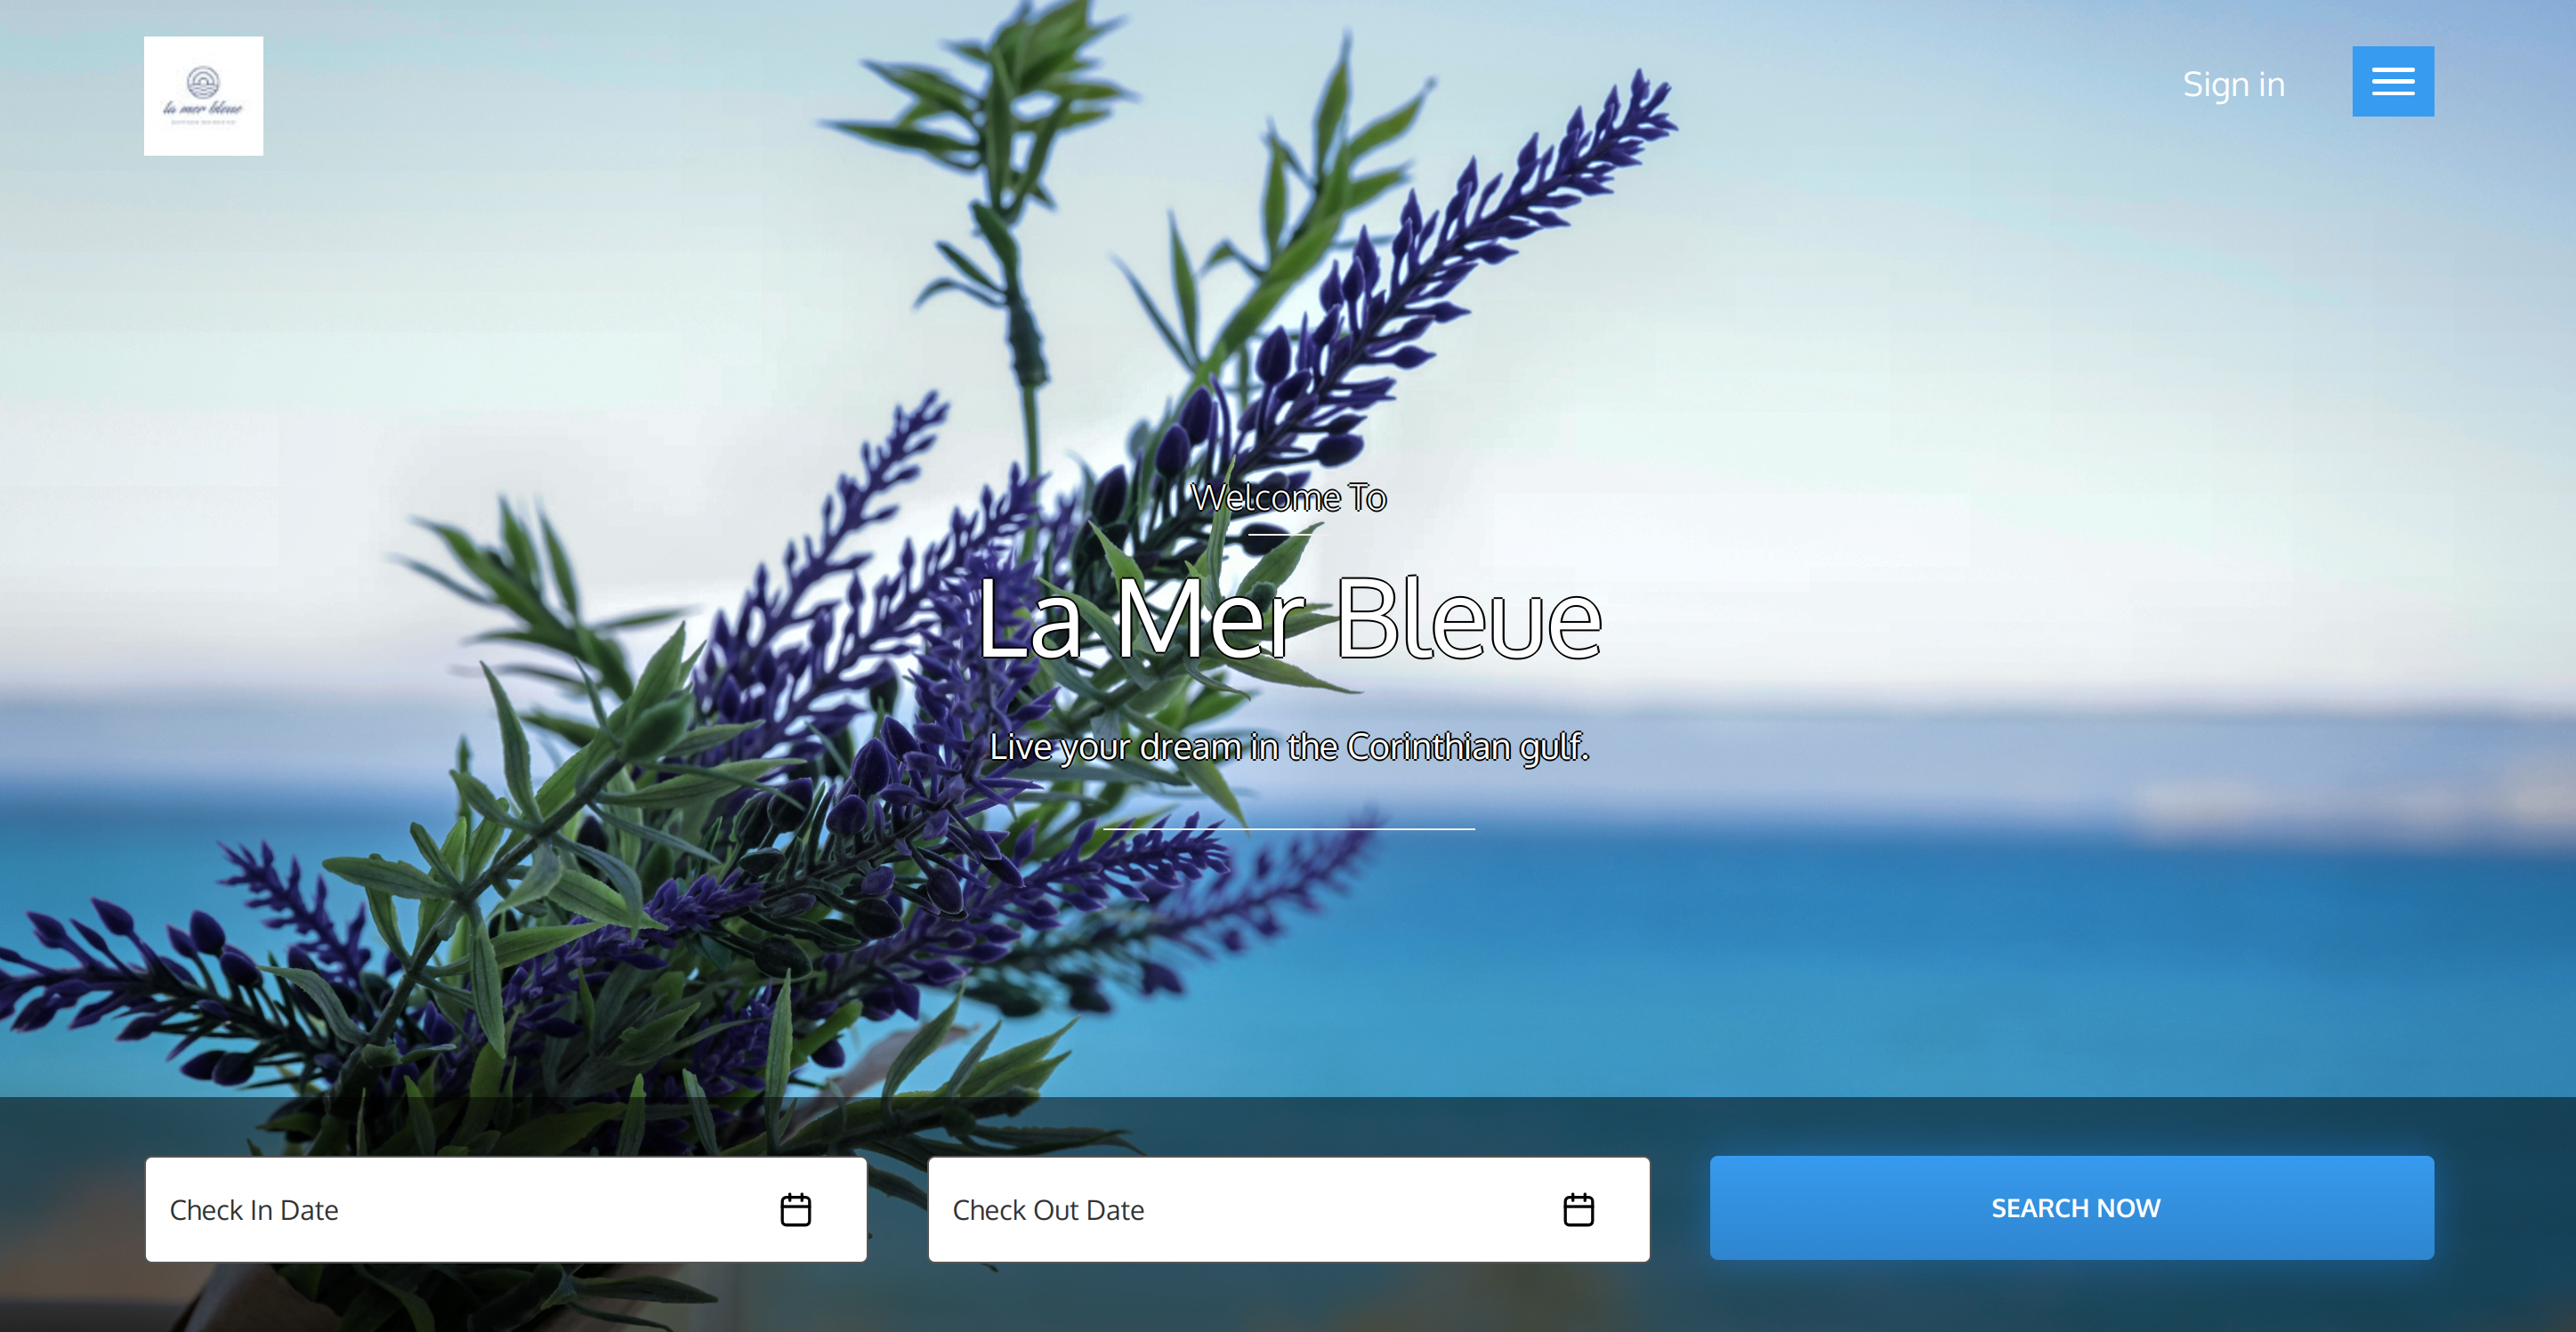 La Mer Bleue Home Page